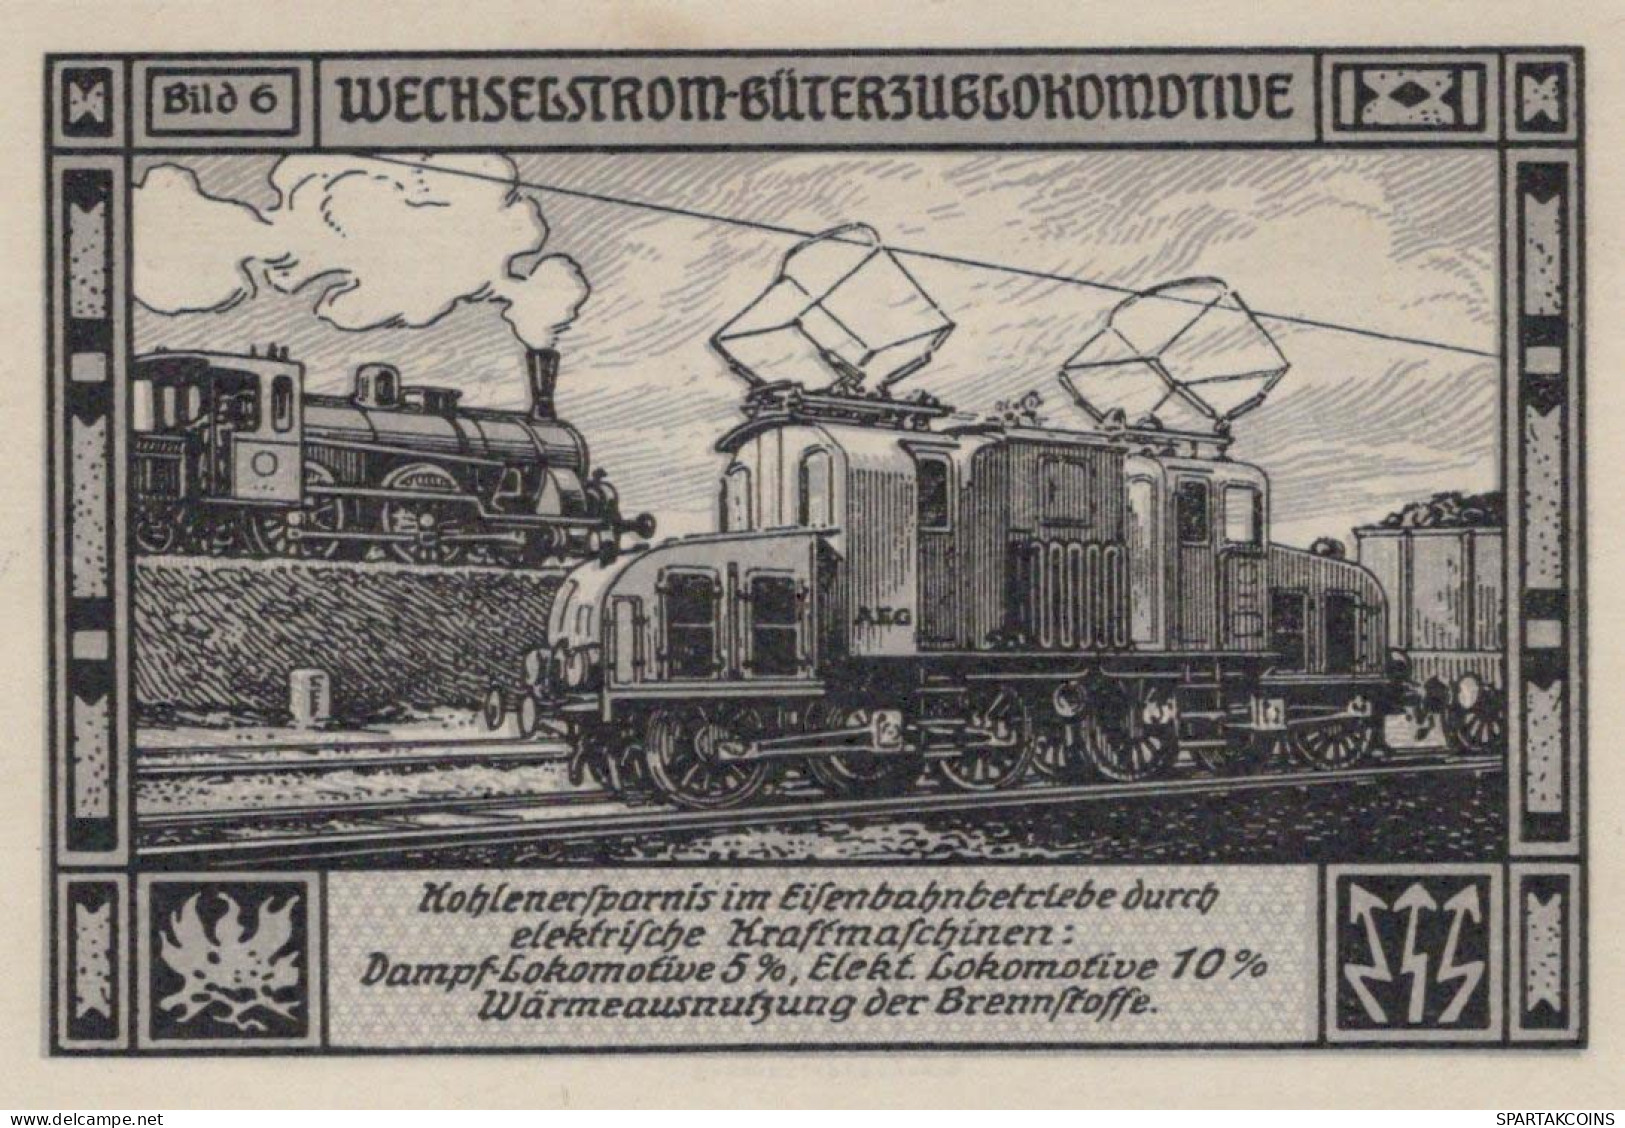 75 PFENNIG 1921 Stadt BITTERFIELD Westphalia UNC DEUTSCHLAND Notgeld #PA233 - [11] Local Banknote Issues